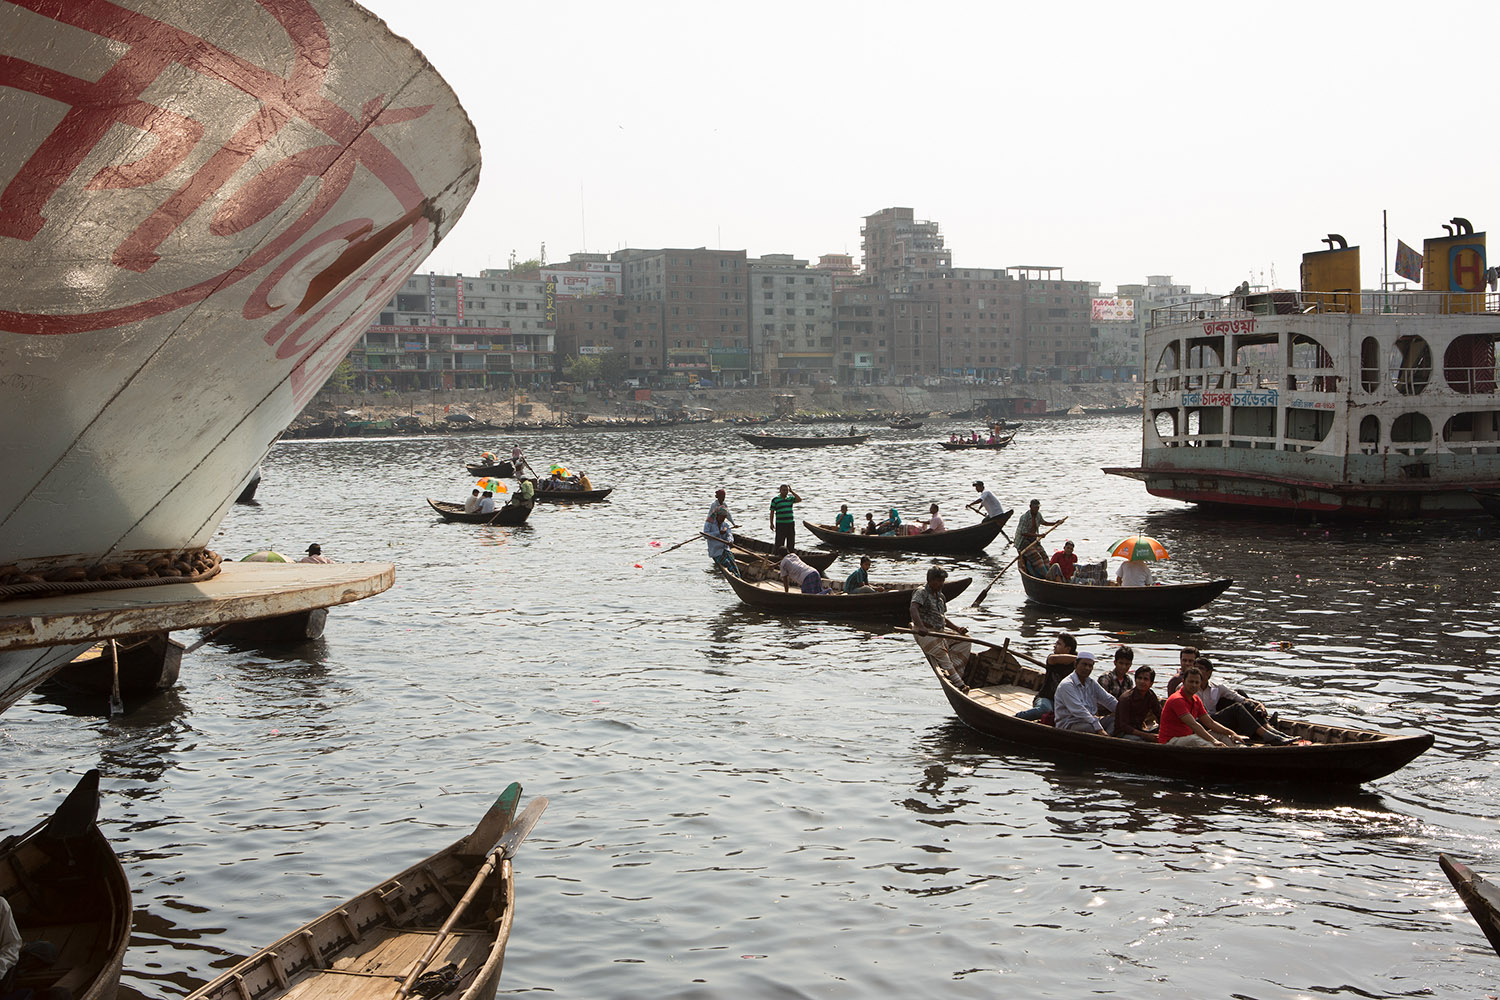 Vue de la rivière Buriganga qui traverse Dacca au Bangladesh. Des petits bateaux de bois sont sur la rivière au milieu de plus gros bateaux.